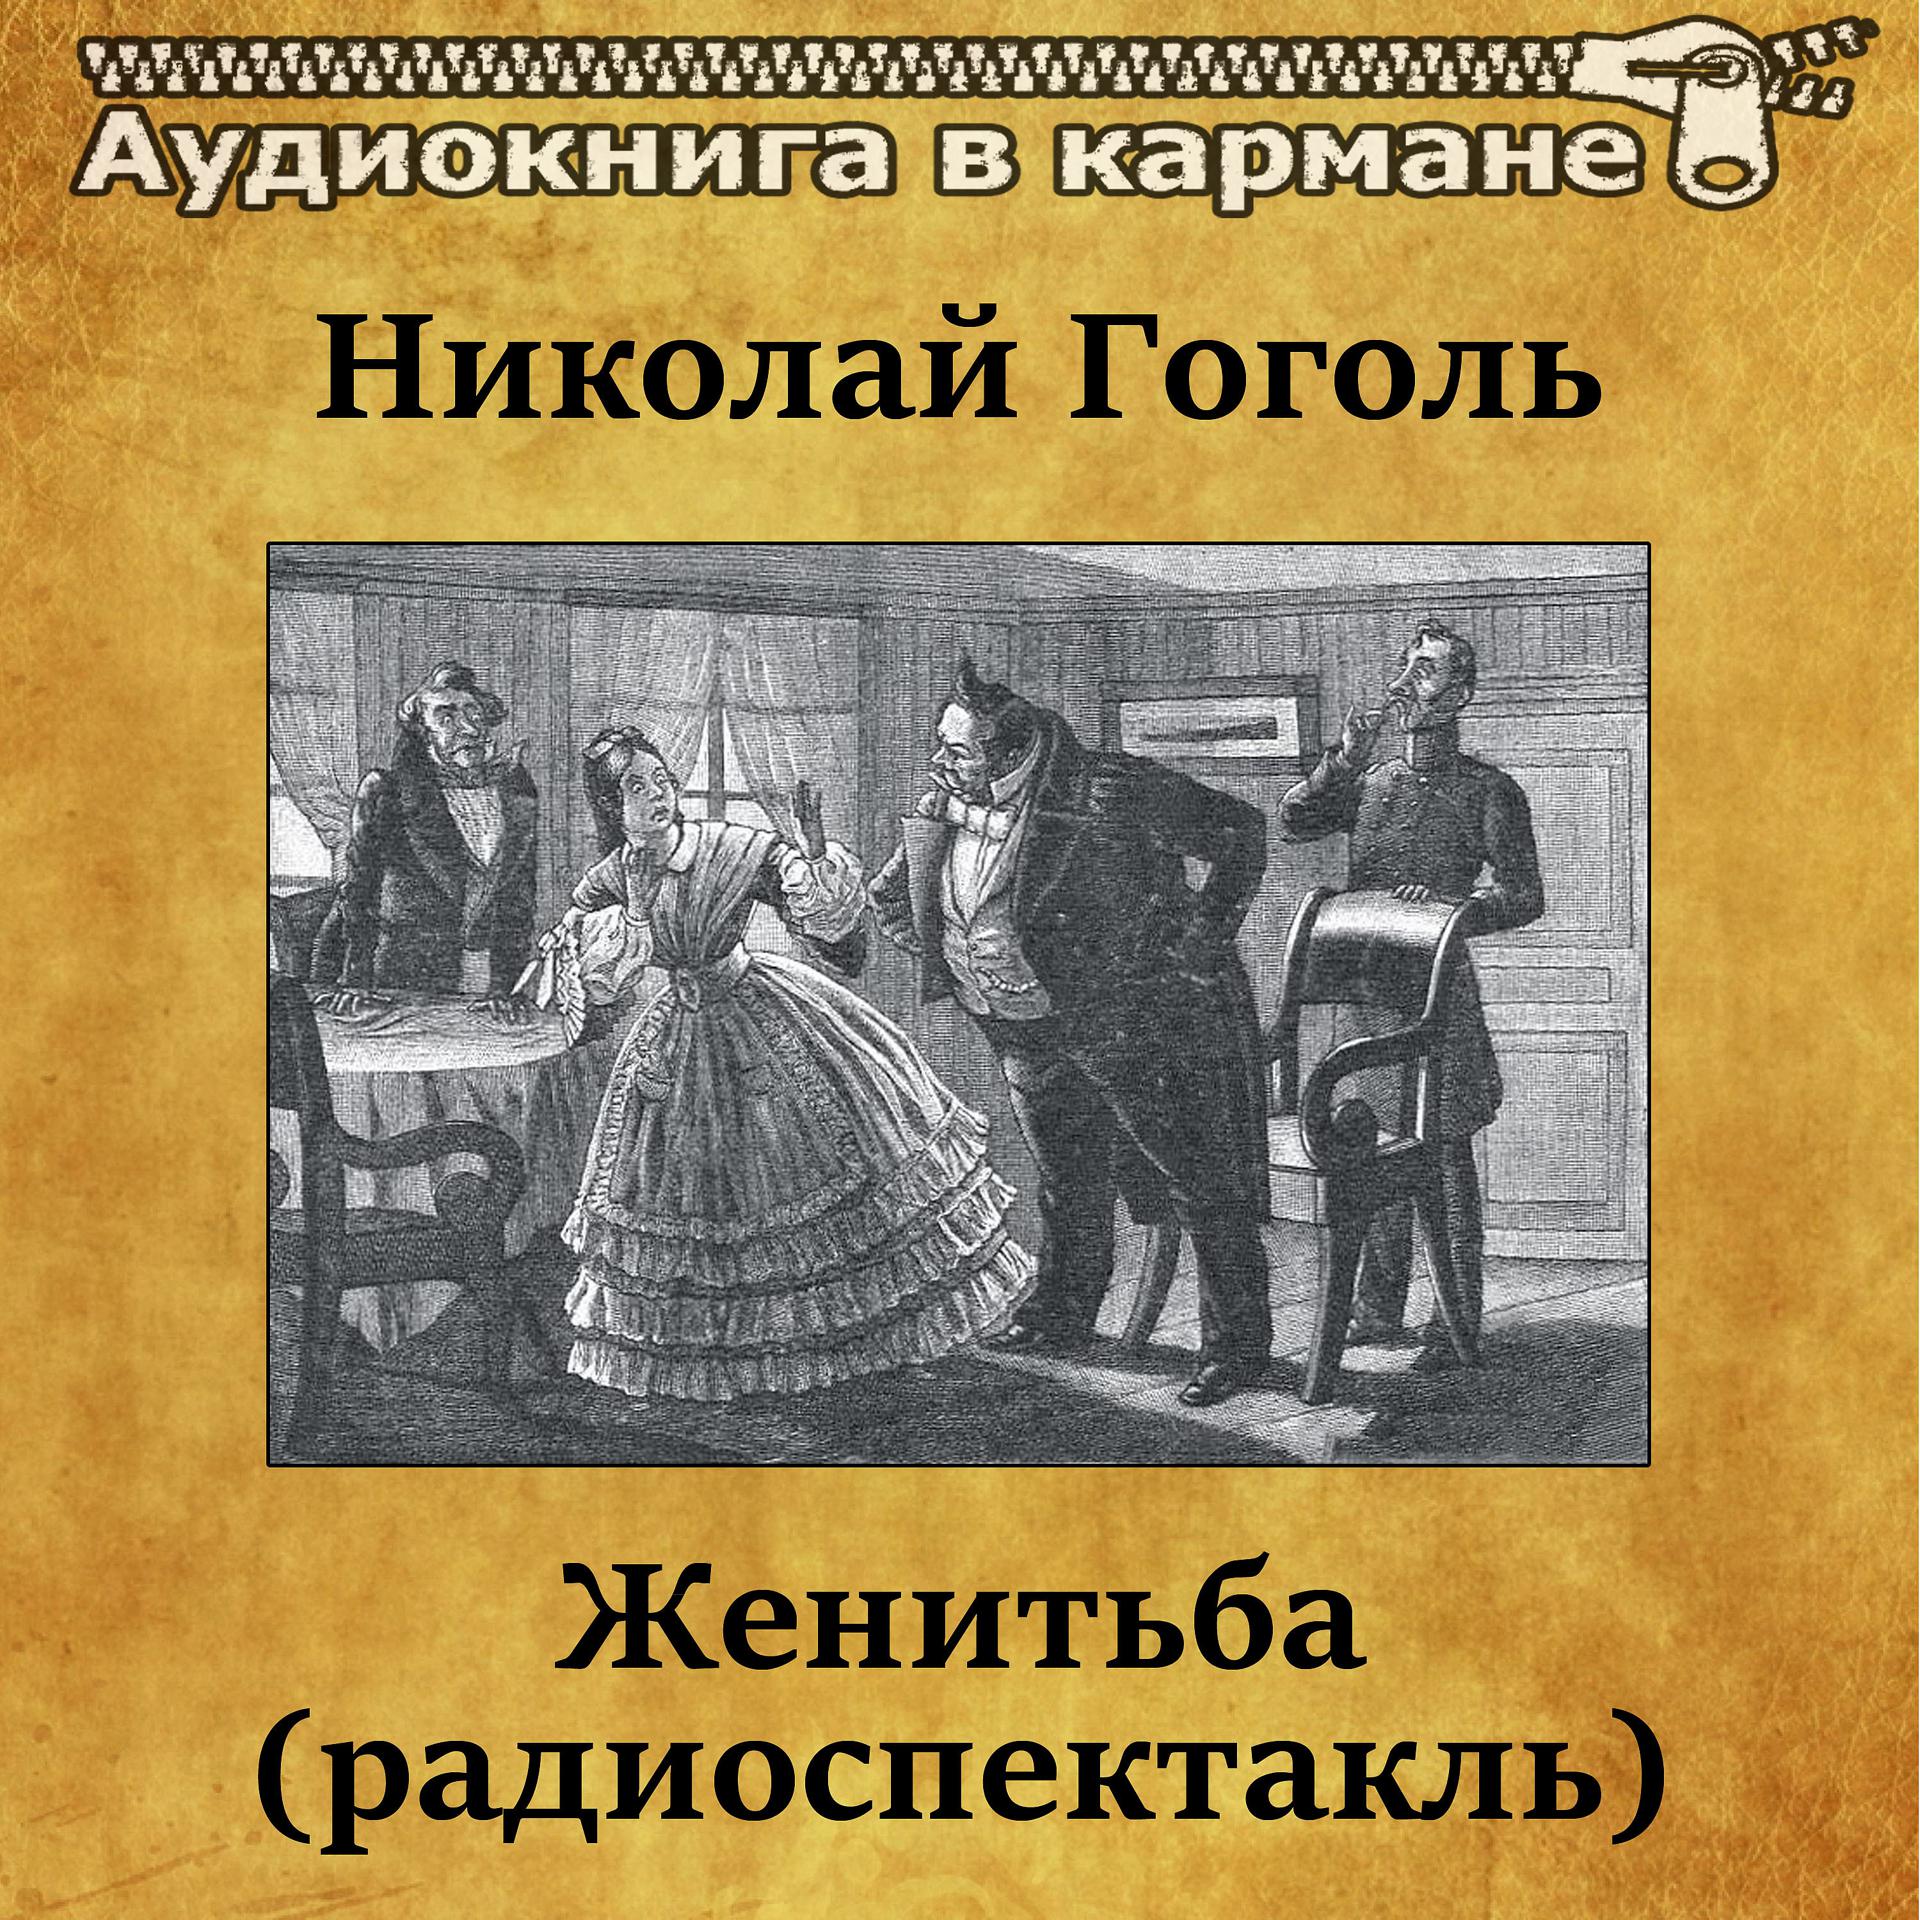 Постер к треку Аудиокнига в кармане, Лев Дуров - Женитьба, Чт. 4